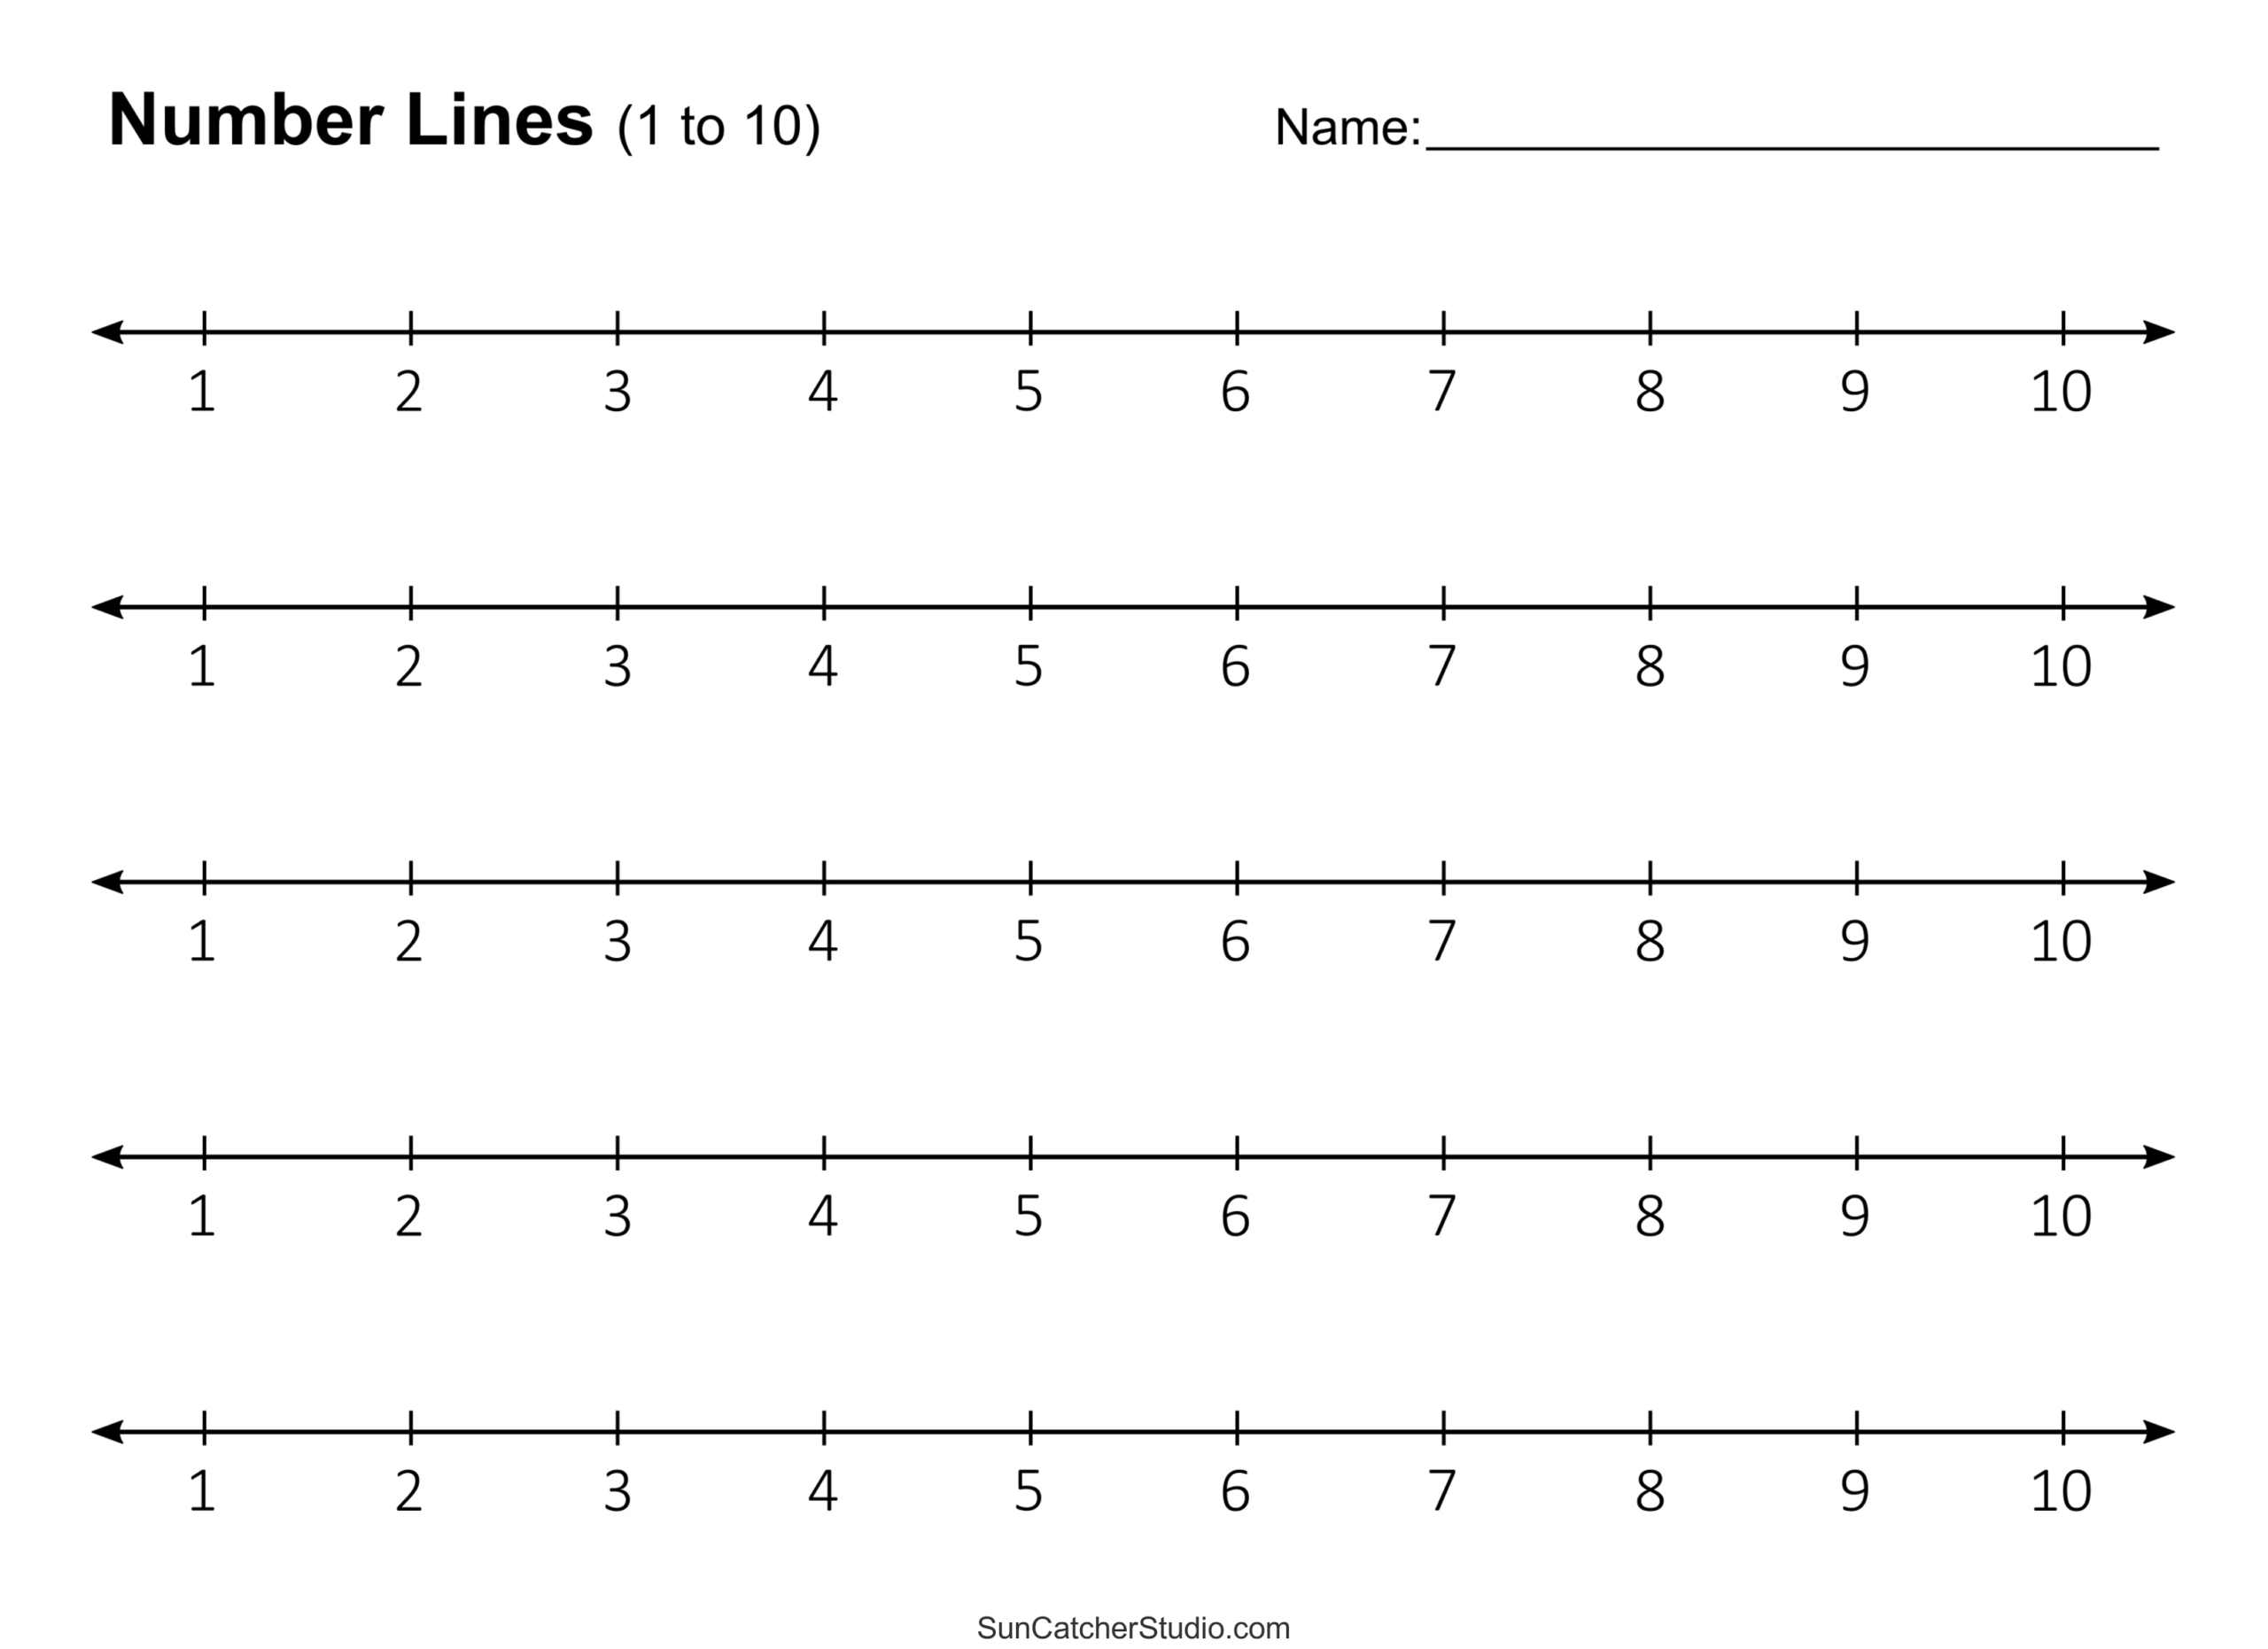 Number Lines (Fraction, Negative, Positive, Decimal, Blank) – Diy - Number Line Negative To Positive Print Free 20